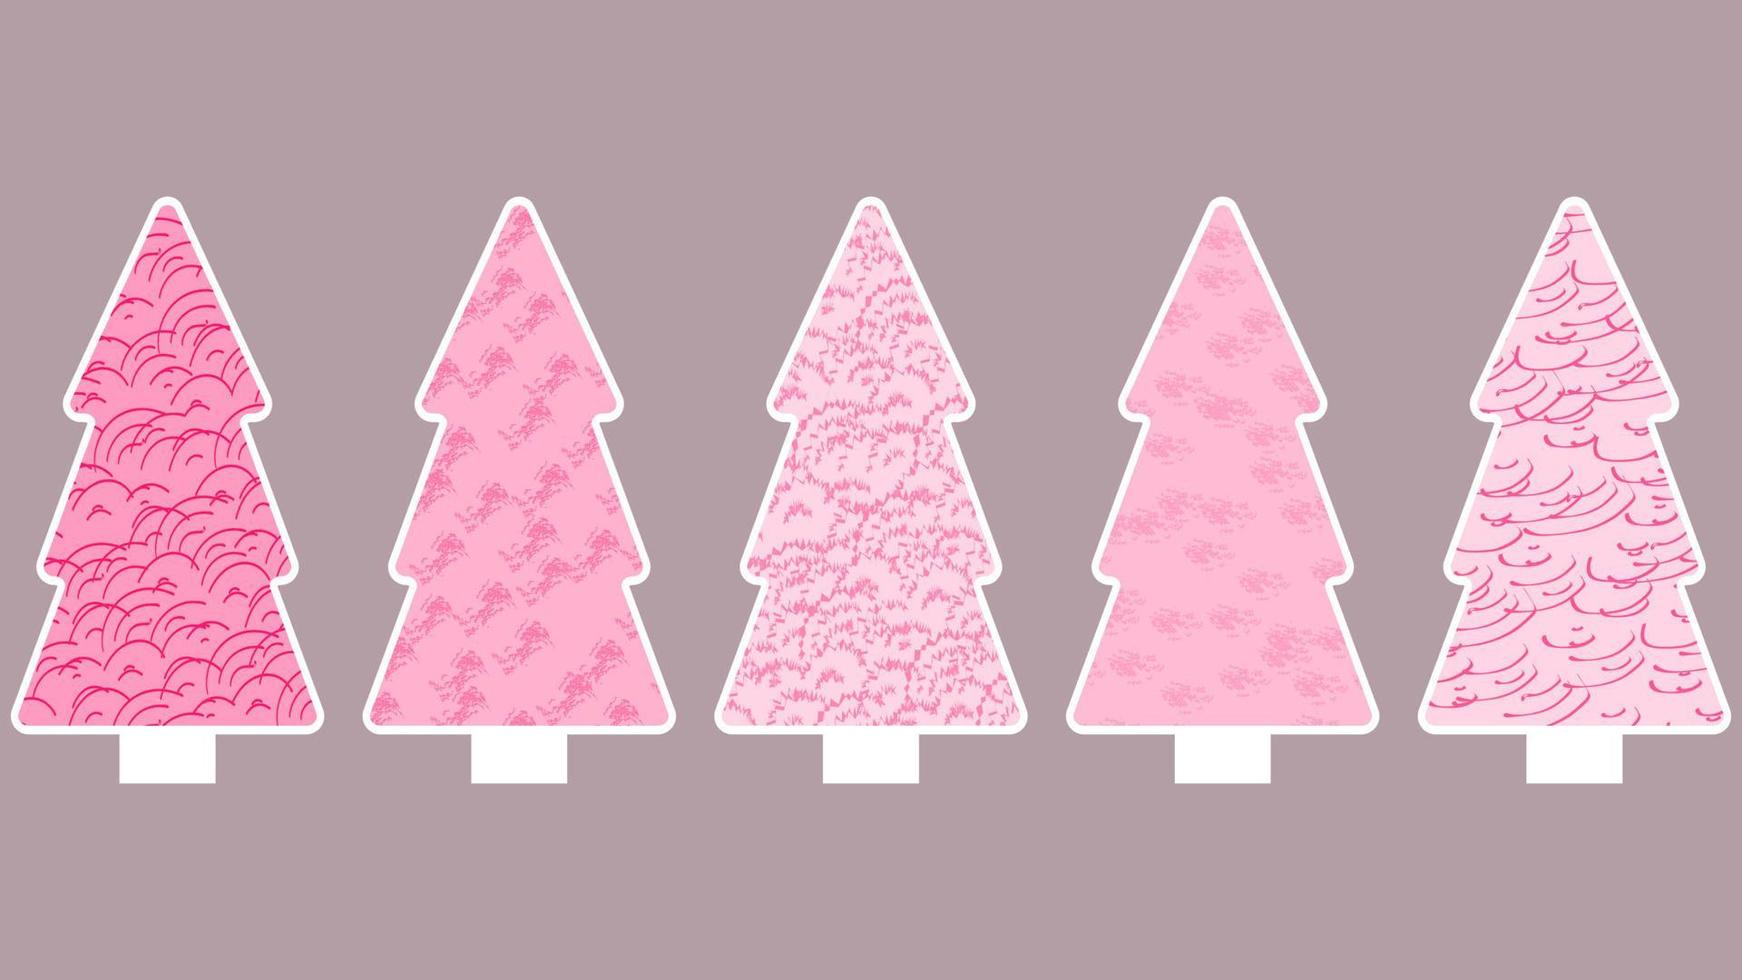 vijf roze zwart-wit kerstbomen met witte omtrek en abstract structuurpatroon. vlakke stijl vector